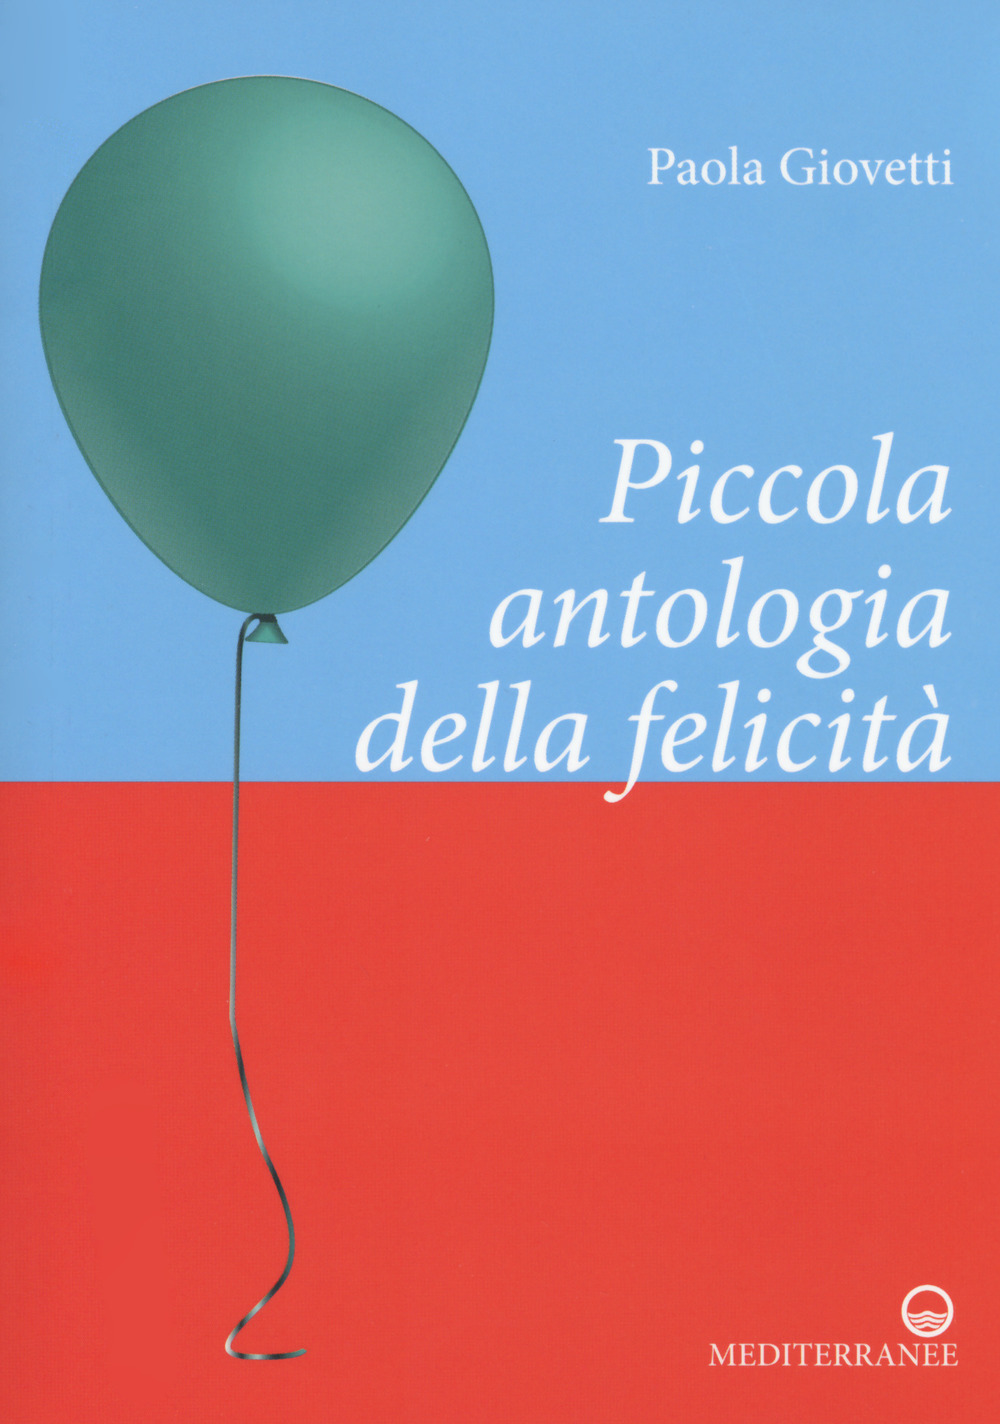 Image of Piccola antologia della felicità